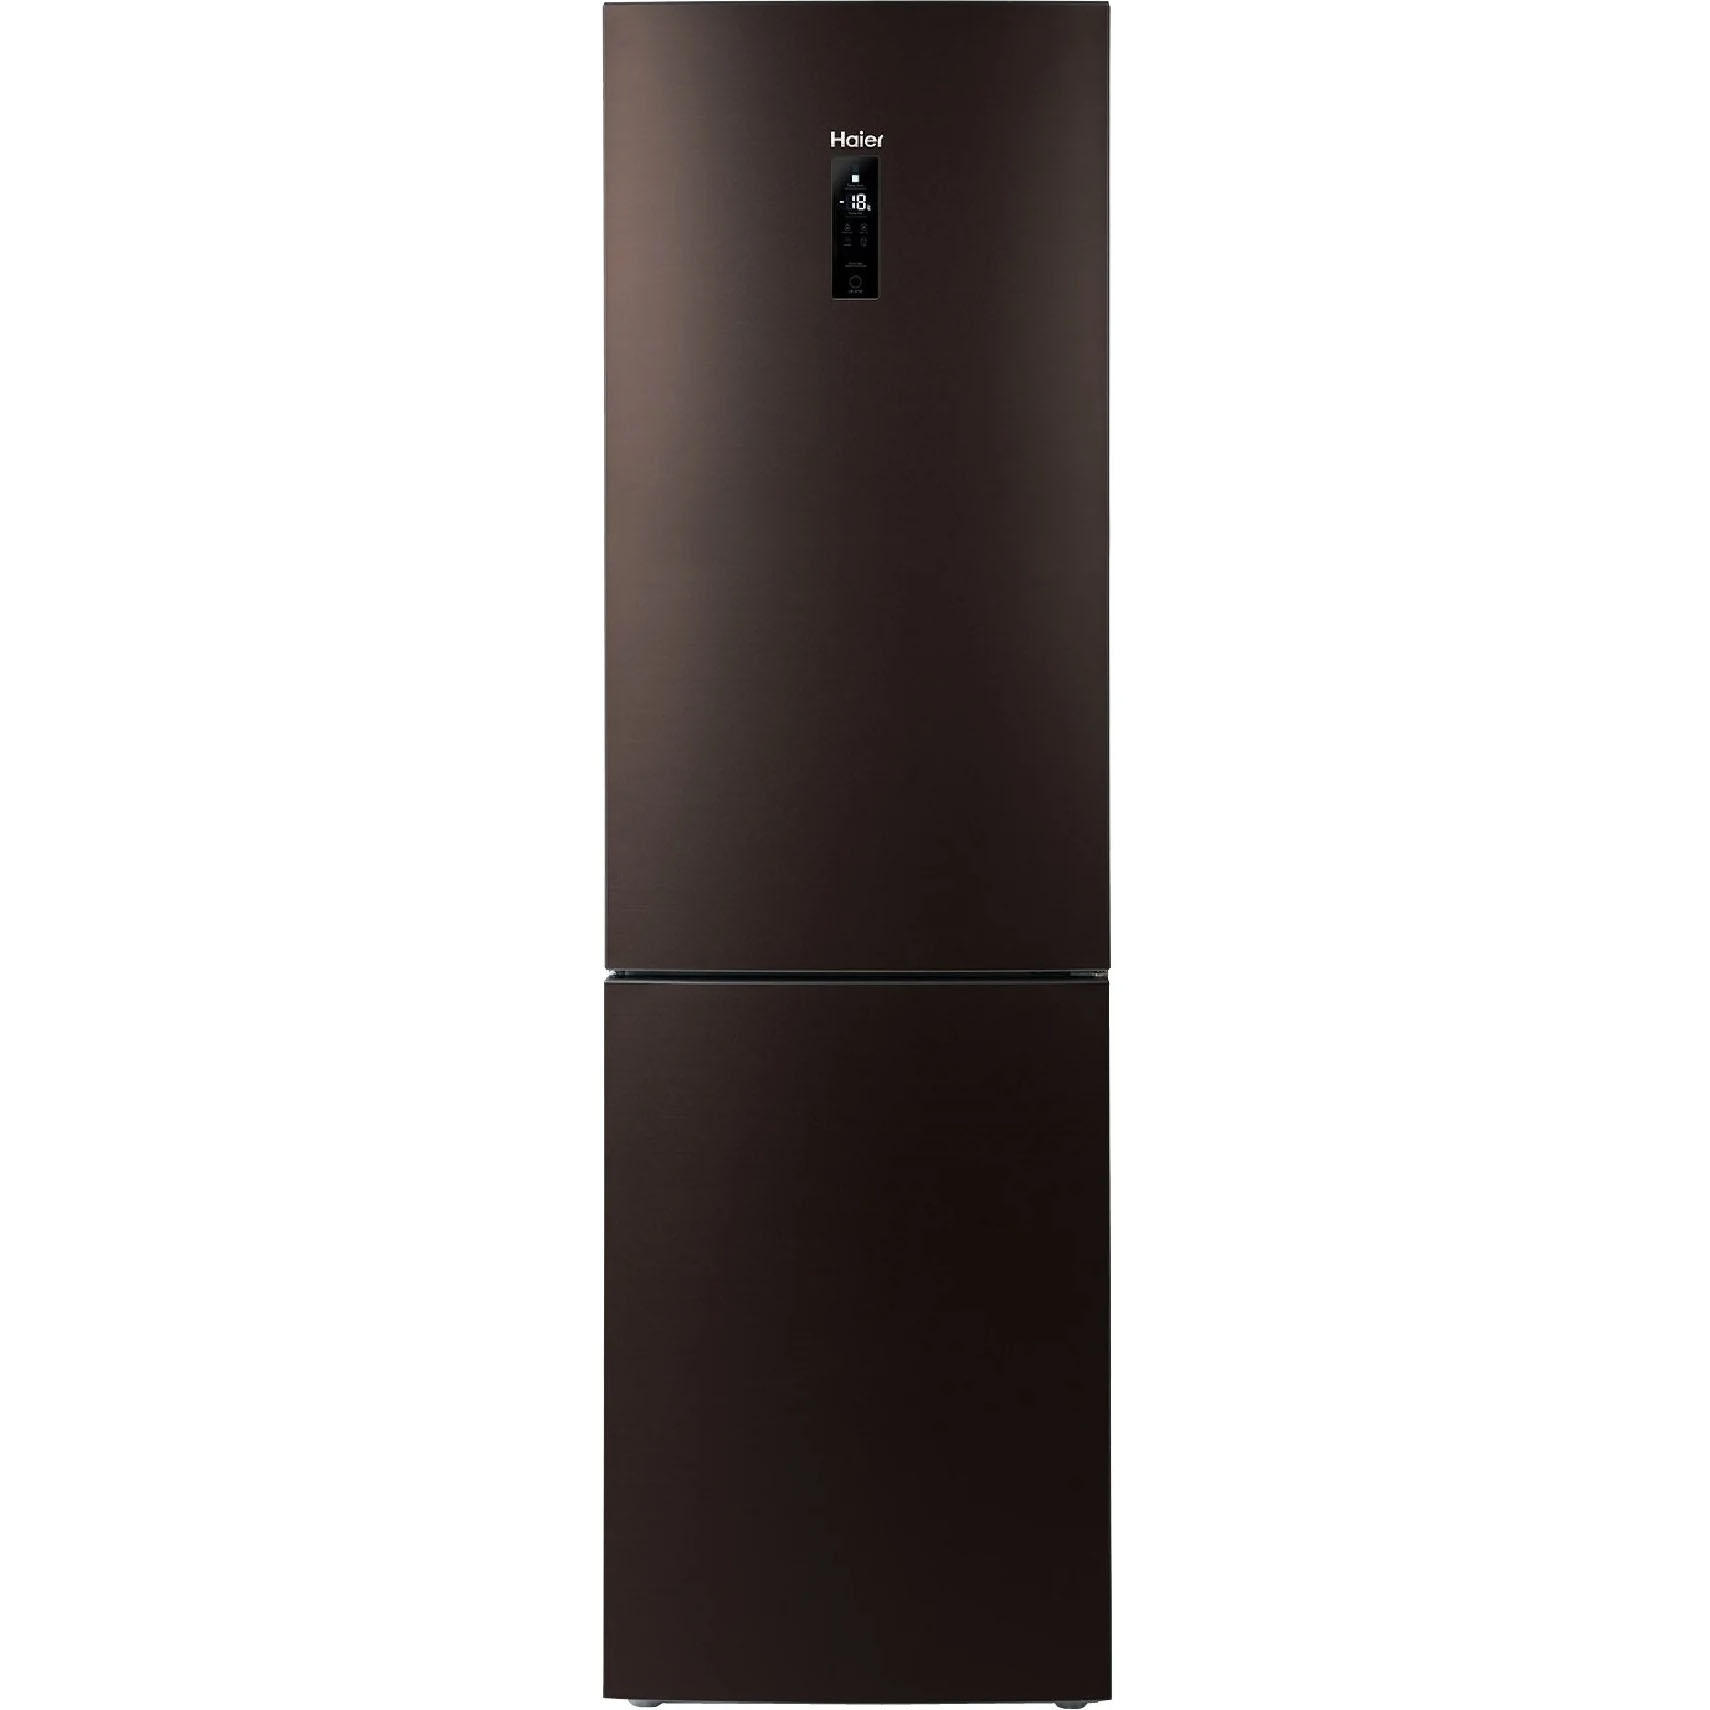 Холодильник хайер производитель. Холодильник Haier c2f737clbg. Холодильник Haier a2f737cdbg. Холодильник Haier c2f737clbg коричневый. Двухкамерный холодильник Haier c2f 737 cbxg.